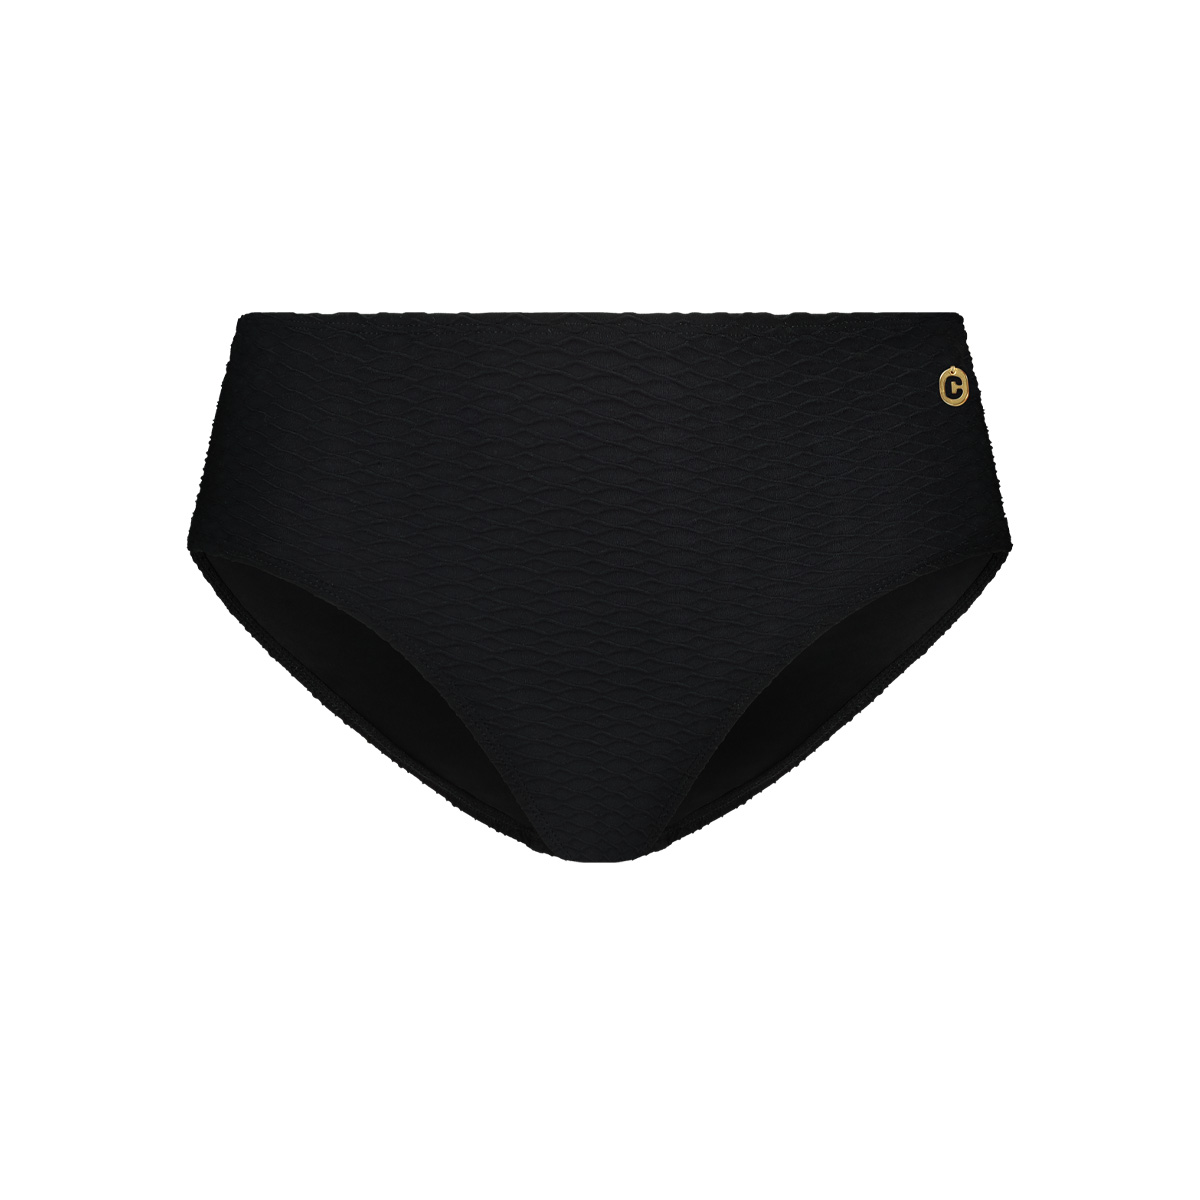 Ten Cate - Bikini Broekje Midi Black Snake - maat 36 - Zwart